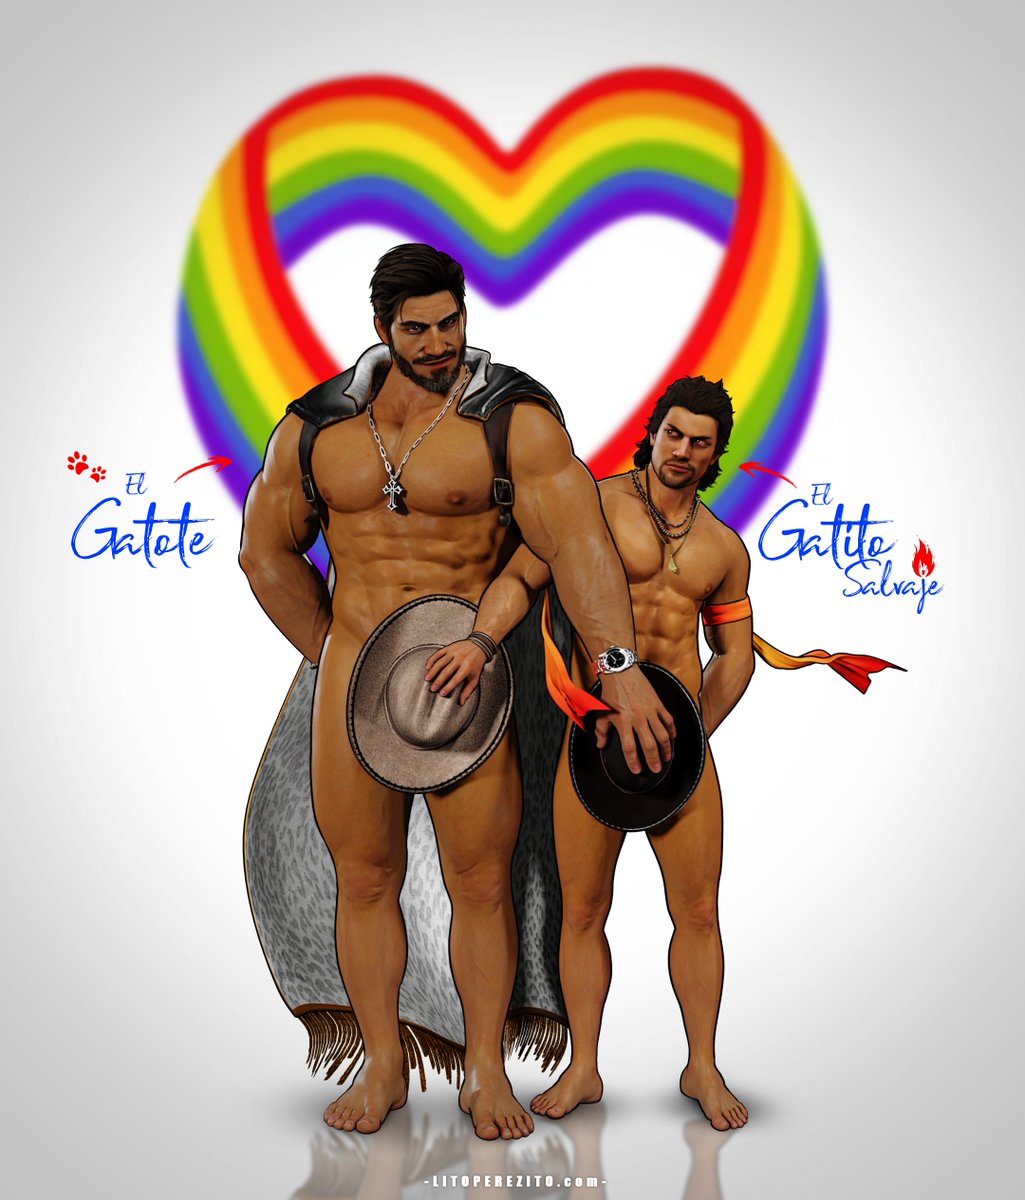 El Gatote y el Gatito Salvaje #PrideMonth 
#king #tekken #elblaze #virtuafighter #kinblaze #elblazeandtheking 
litoperezito.com/kinblaze/